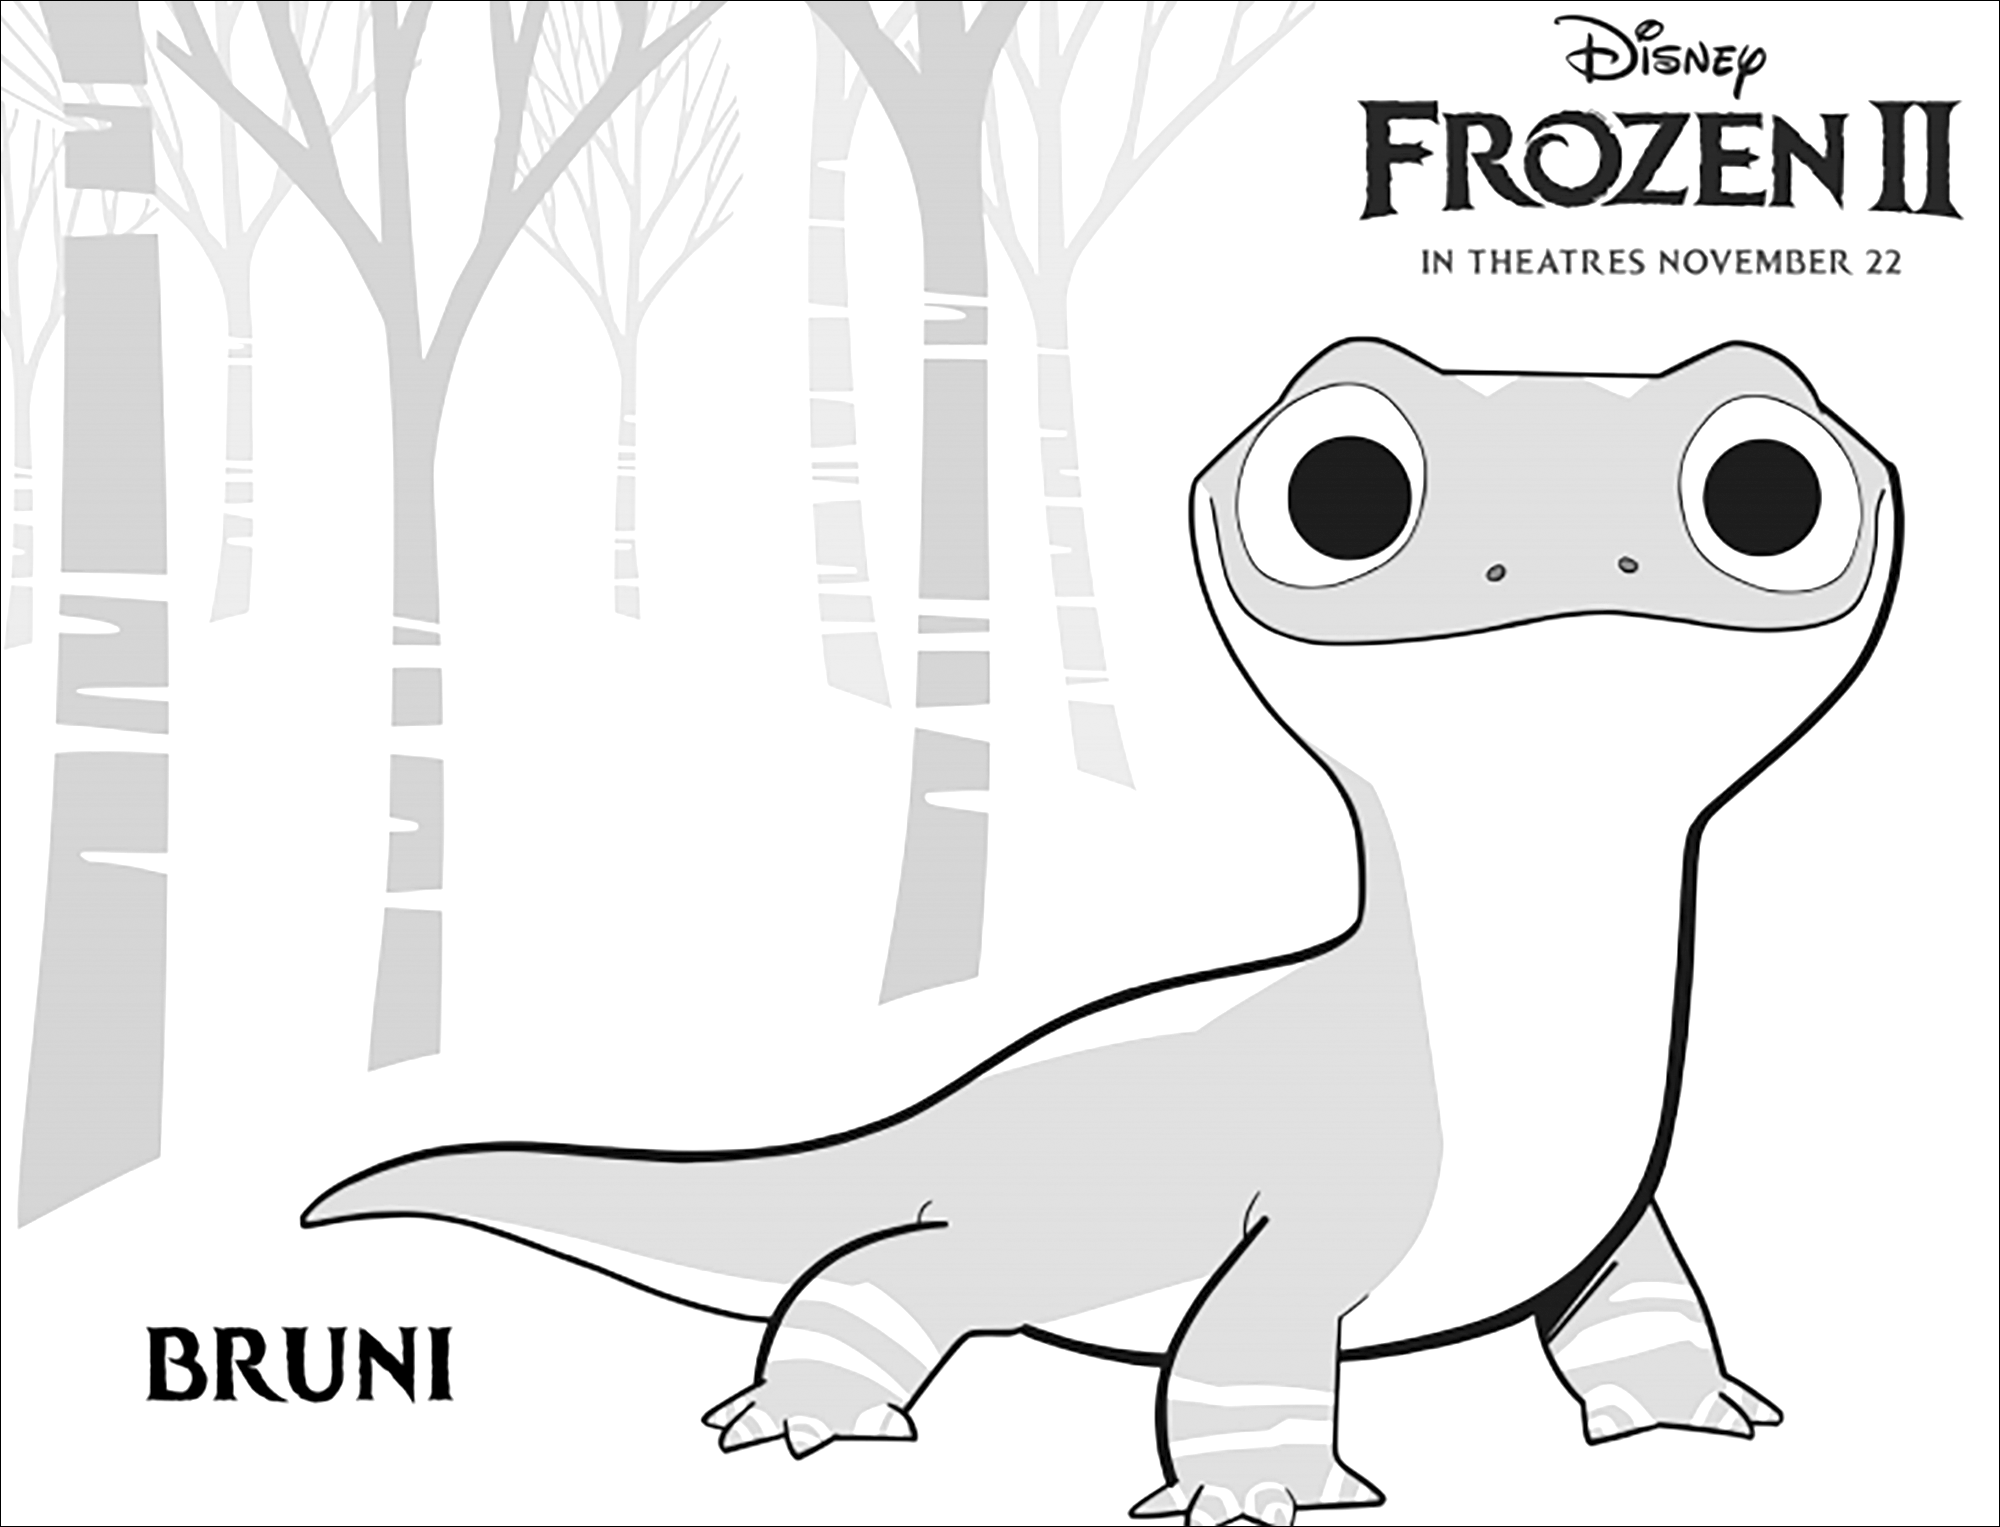 L'étrange Bruni, nouvelle créature qu'on découvre dans La reine des neiges 2 (Disney) : (version avec texte)